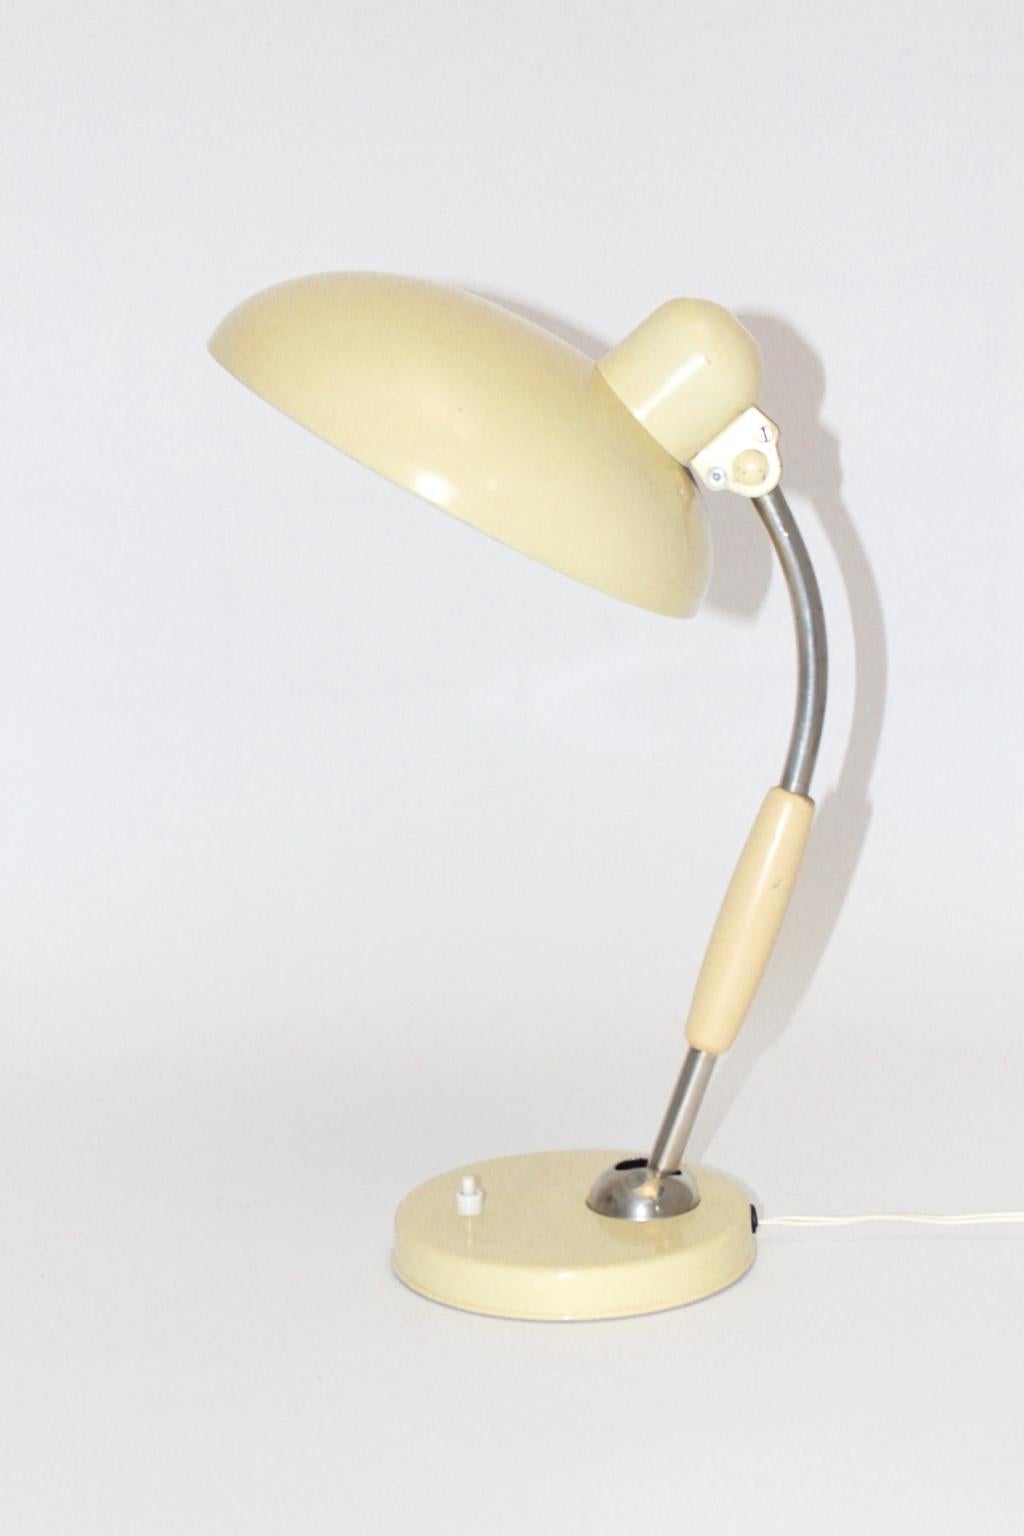 Cette lampe de table de couleur ivoire a été conçue par Christian Dell en 1933 et produite par Koranda, en Allemagne, vers 1950. En outre, la lampe de table était composée de pièces en métal et en bois. La lampe de table comporte également des